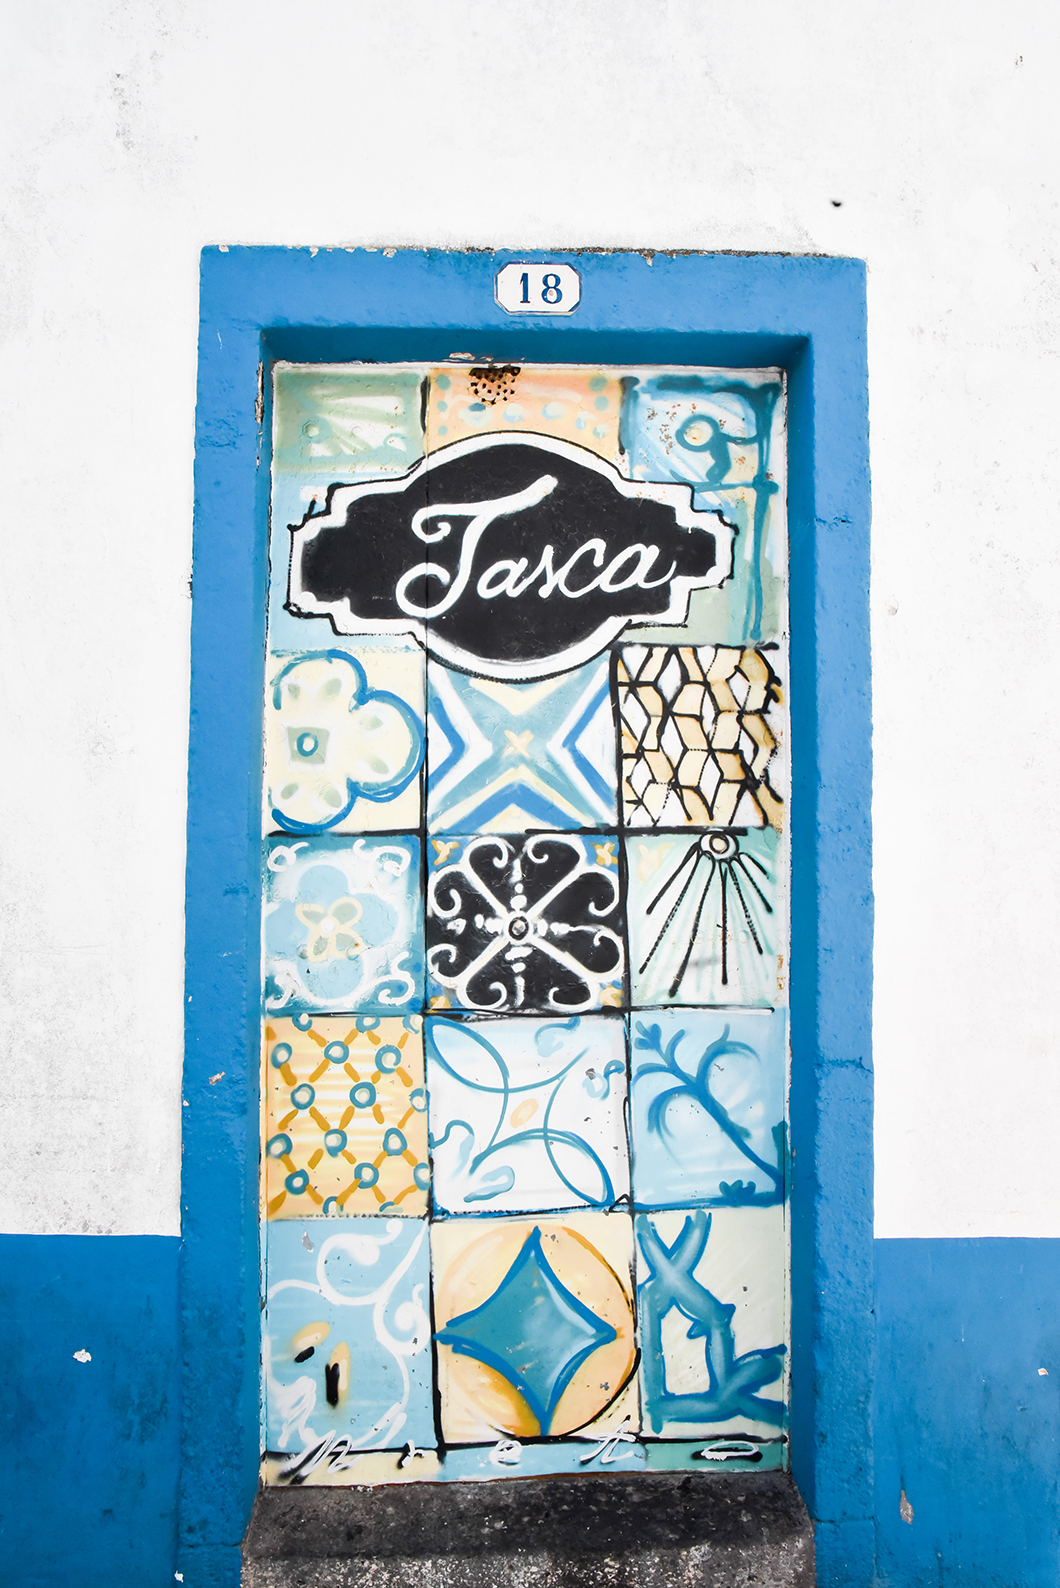 A Tasca, le meilleur restaurant de l’île de Sao Miguel dans les Açores